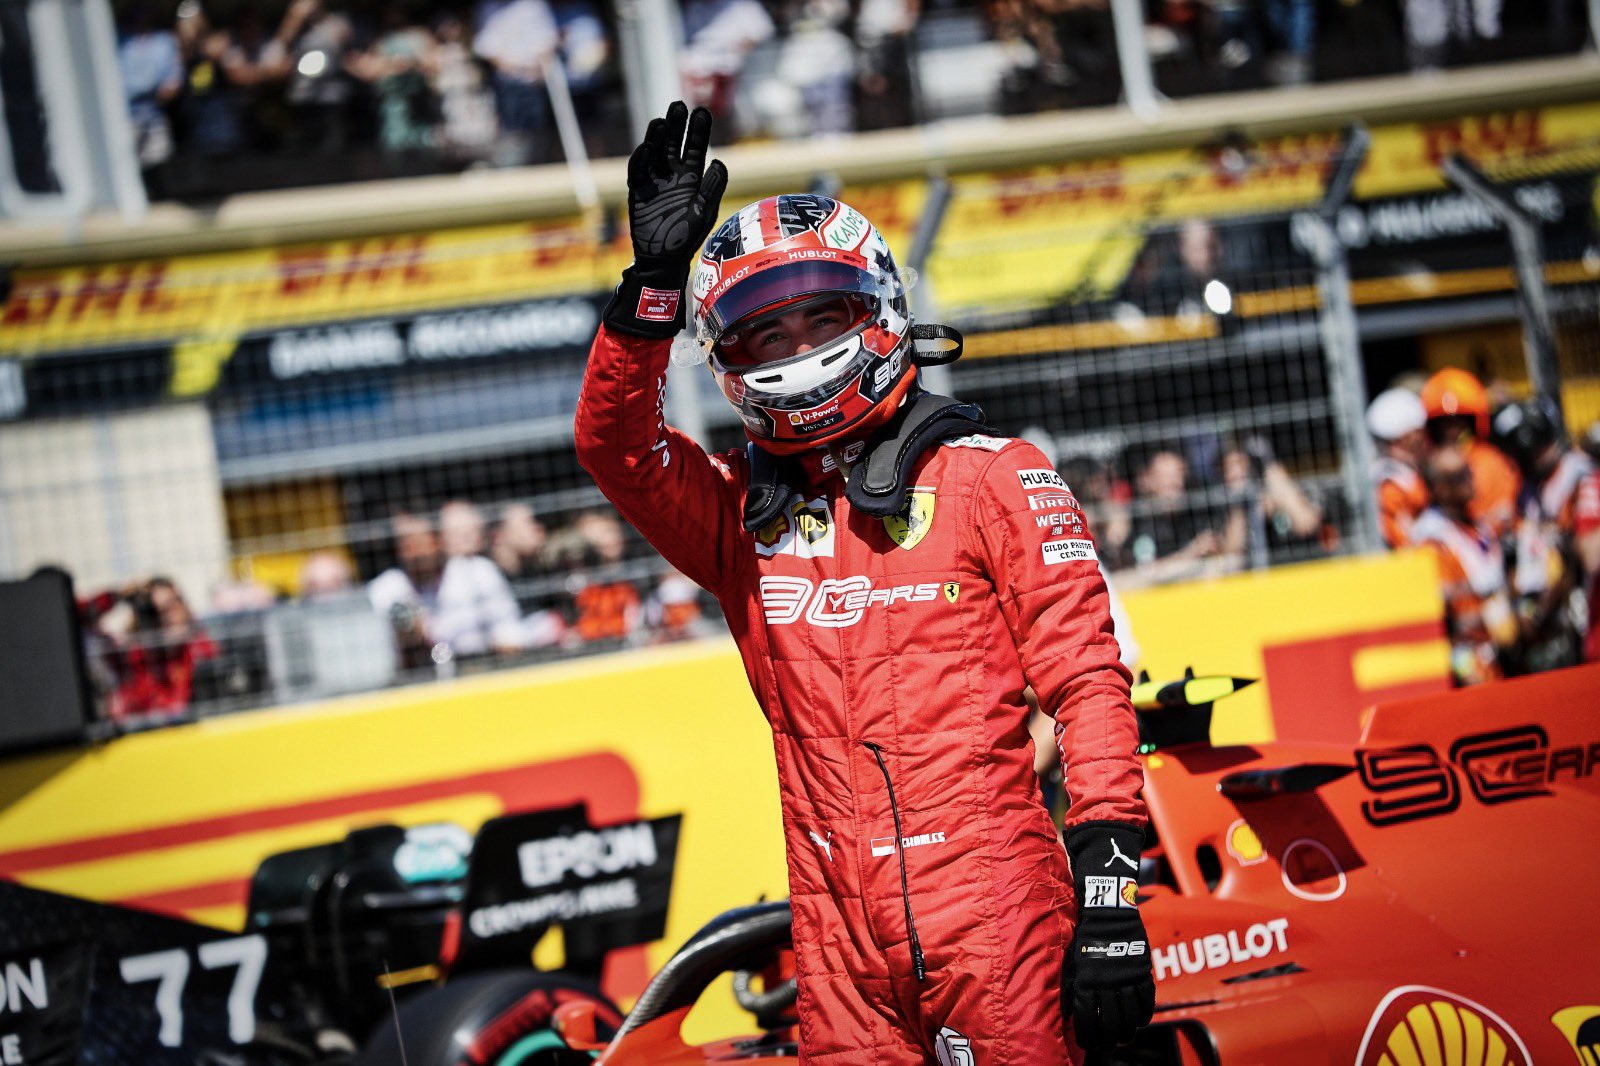 Pembalap Ferrari, Charles Leclerc akan start terdepan di GP Austria. (Foto: Twitter/@Charles_Leclerc)